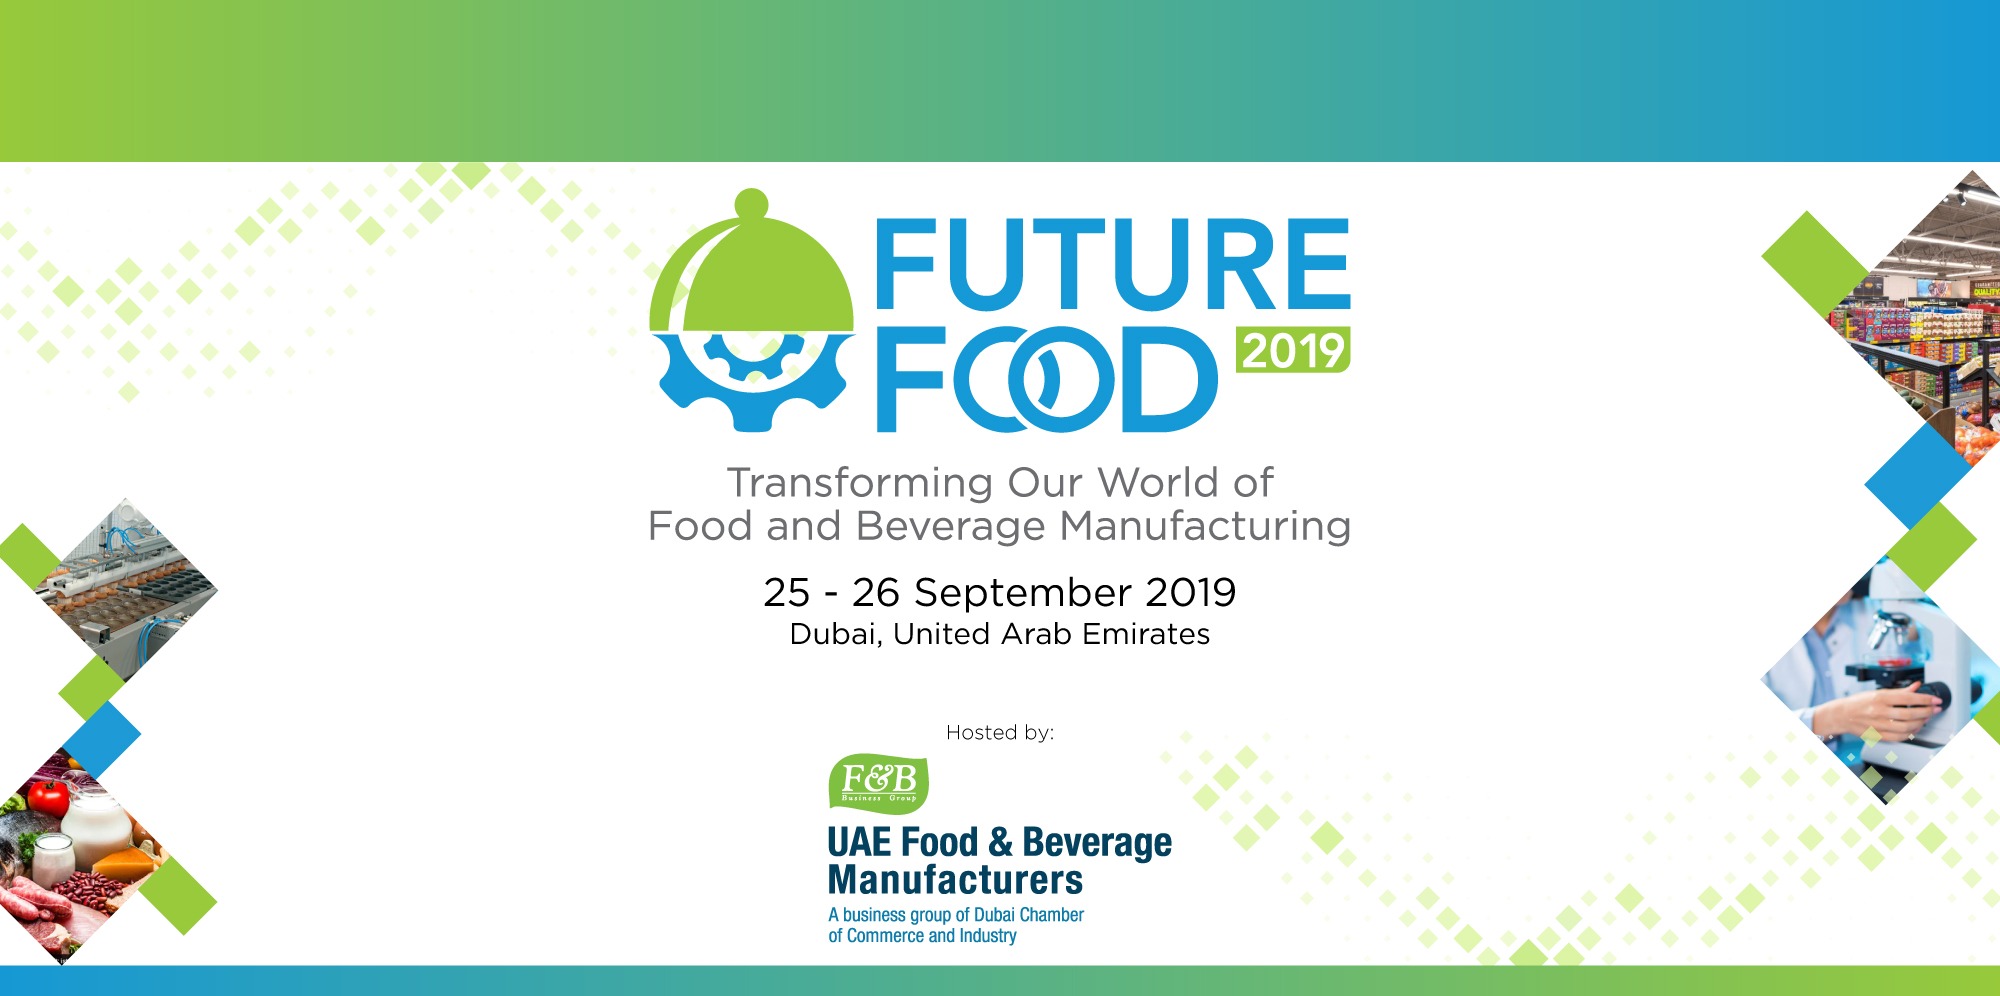 Future Food Forum 2019 - Coming Soon in UAE